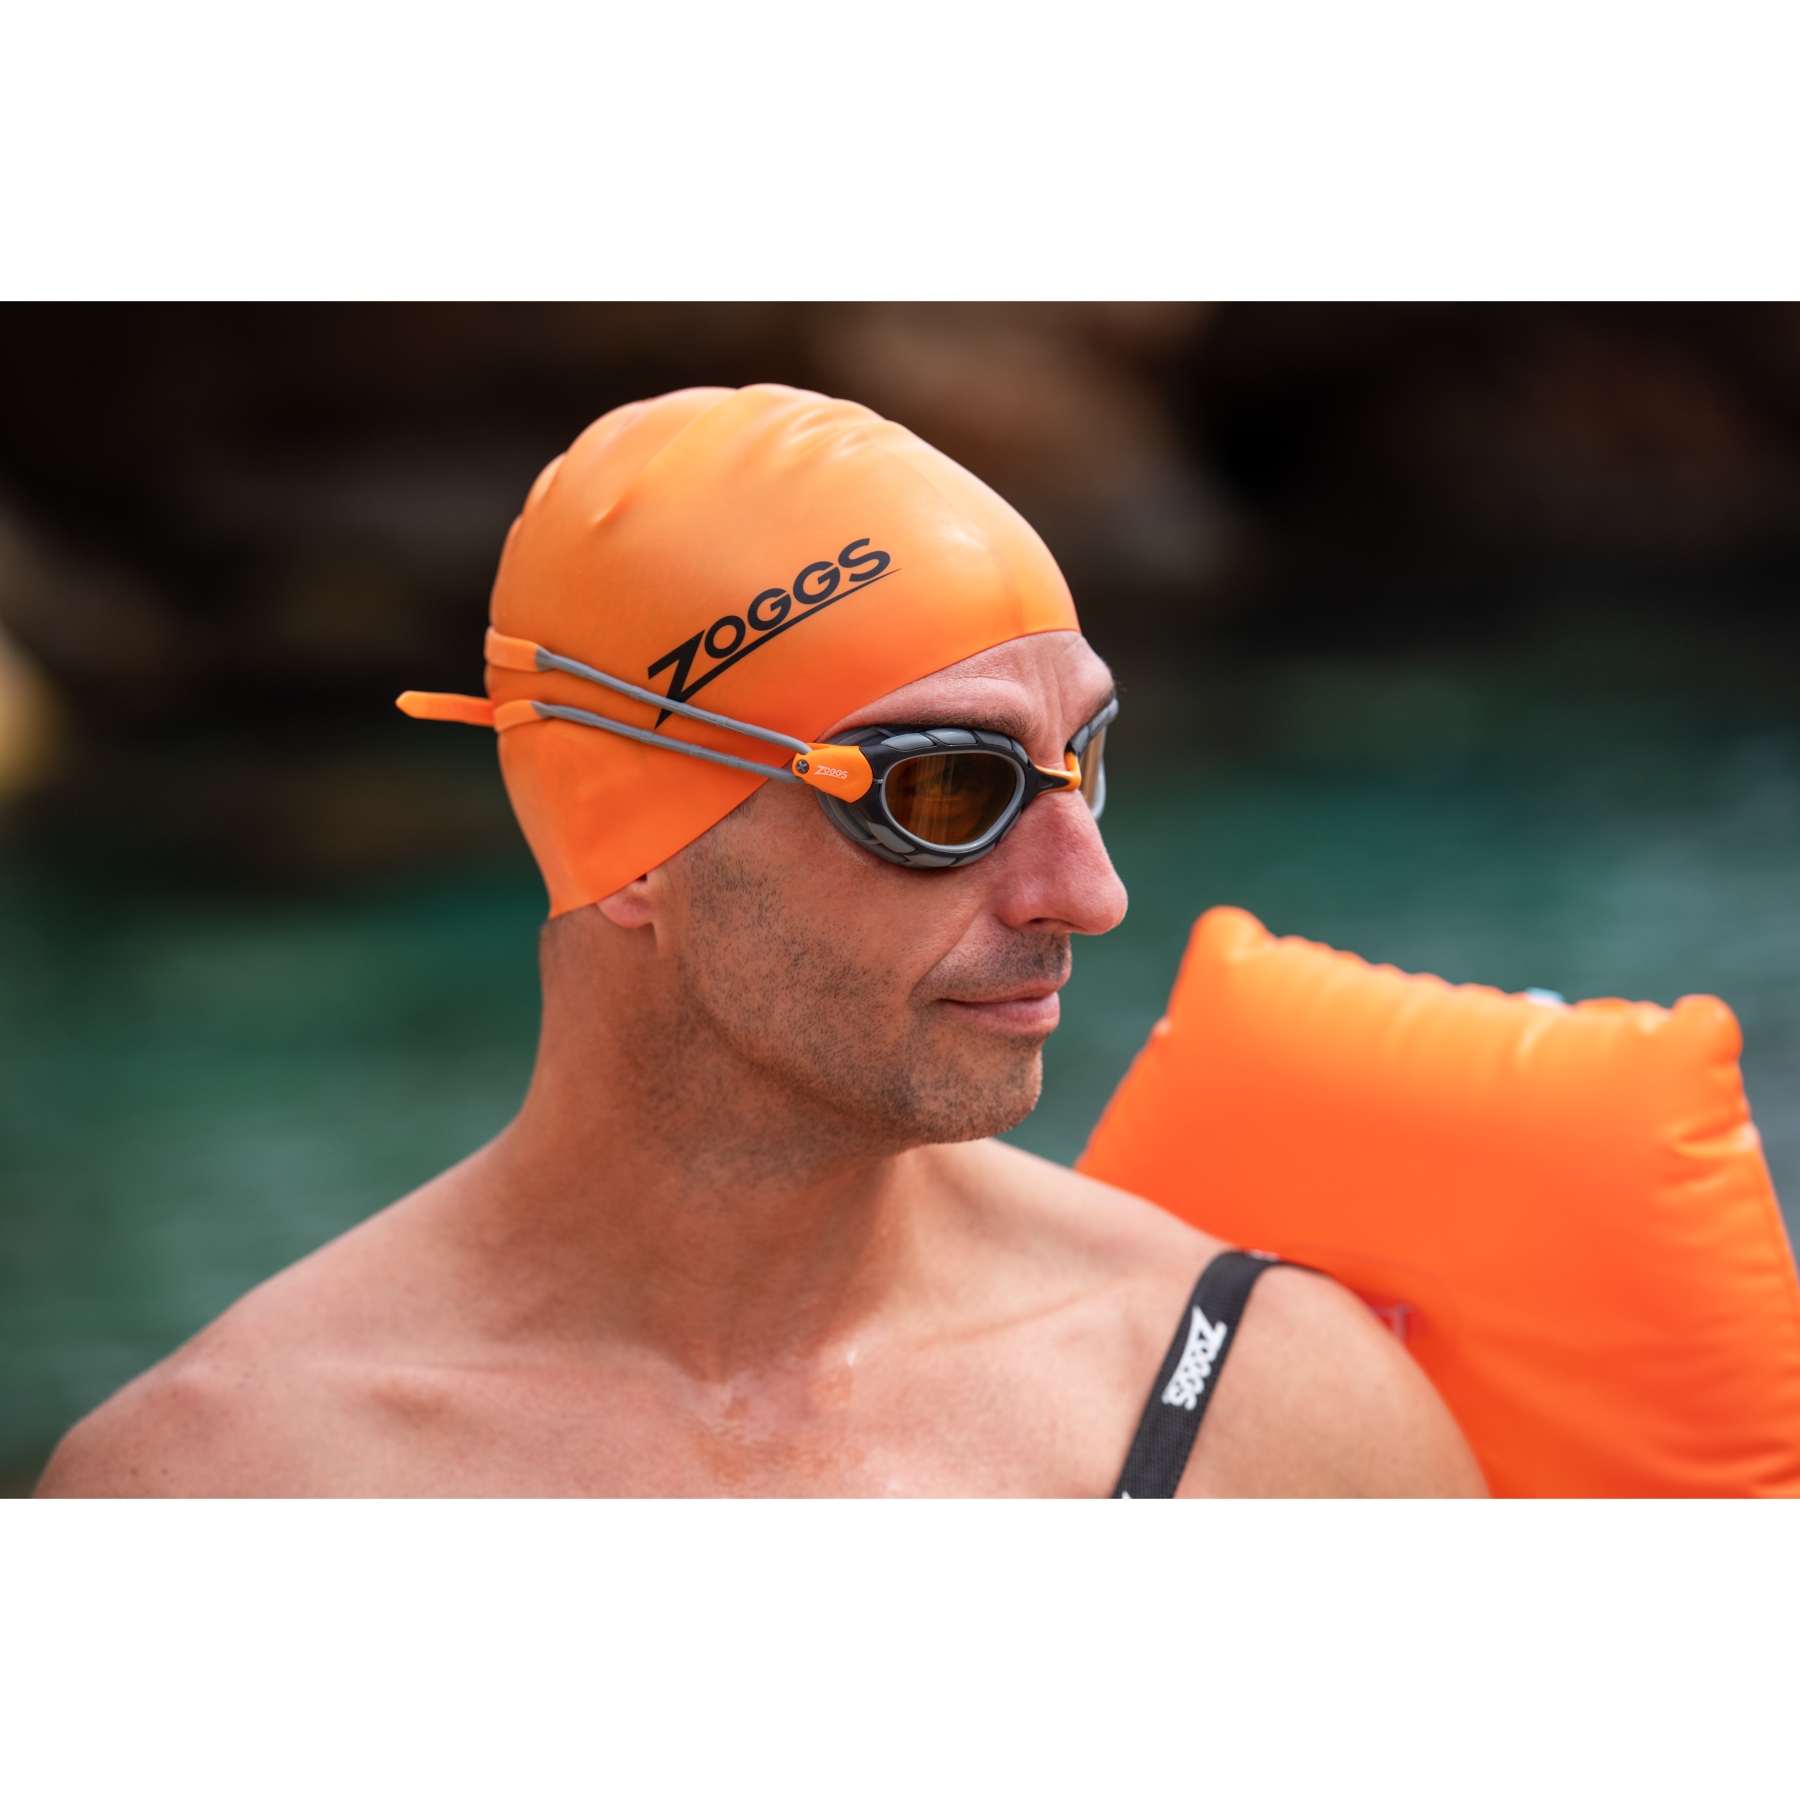 Gafas Zoggs Predator: las mejores gafas de natación y triatlón